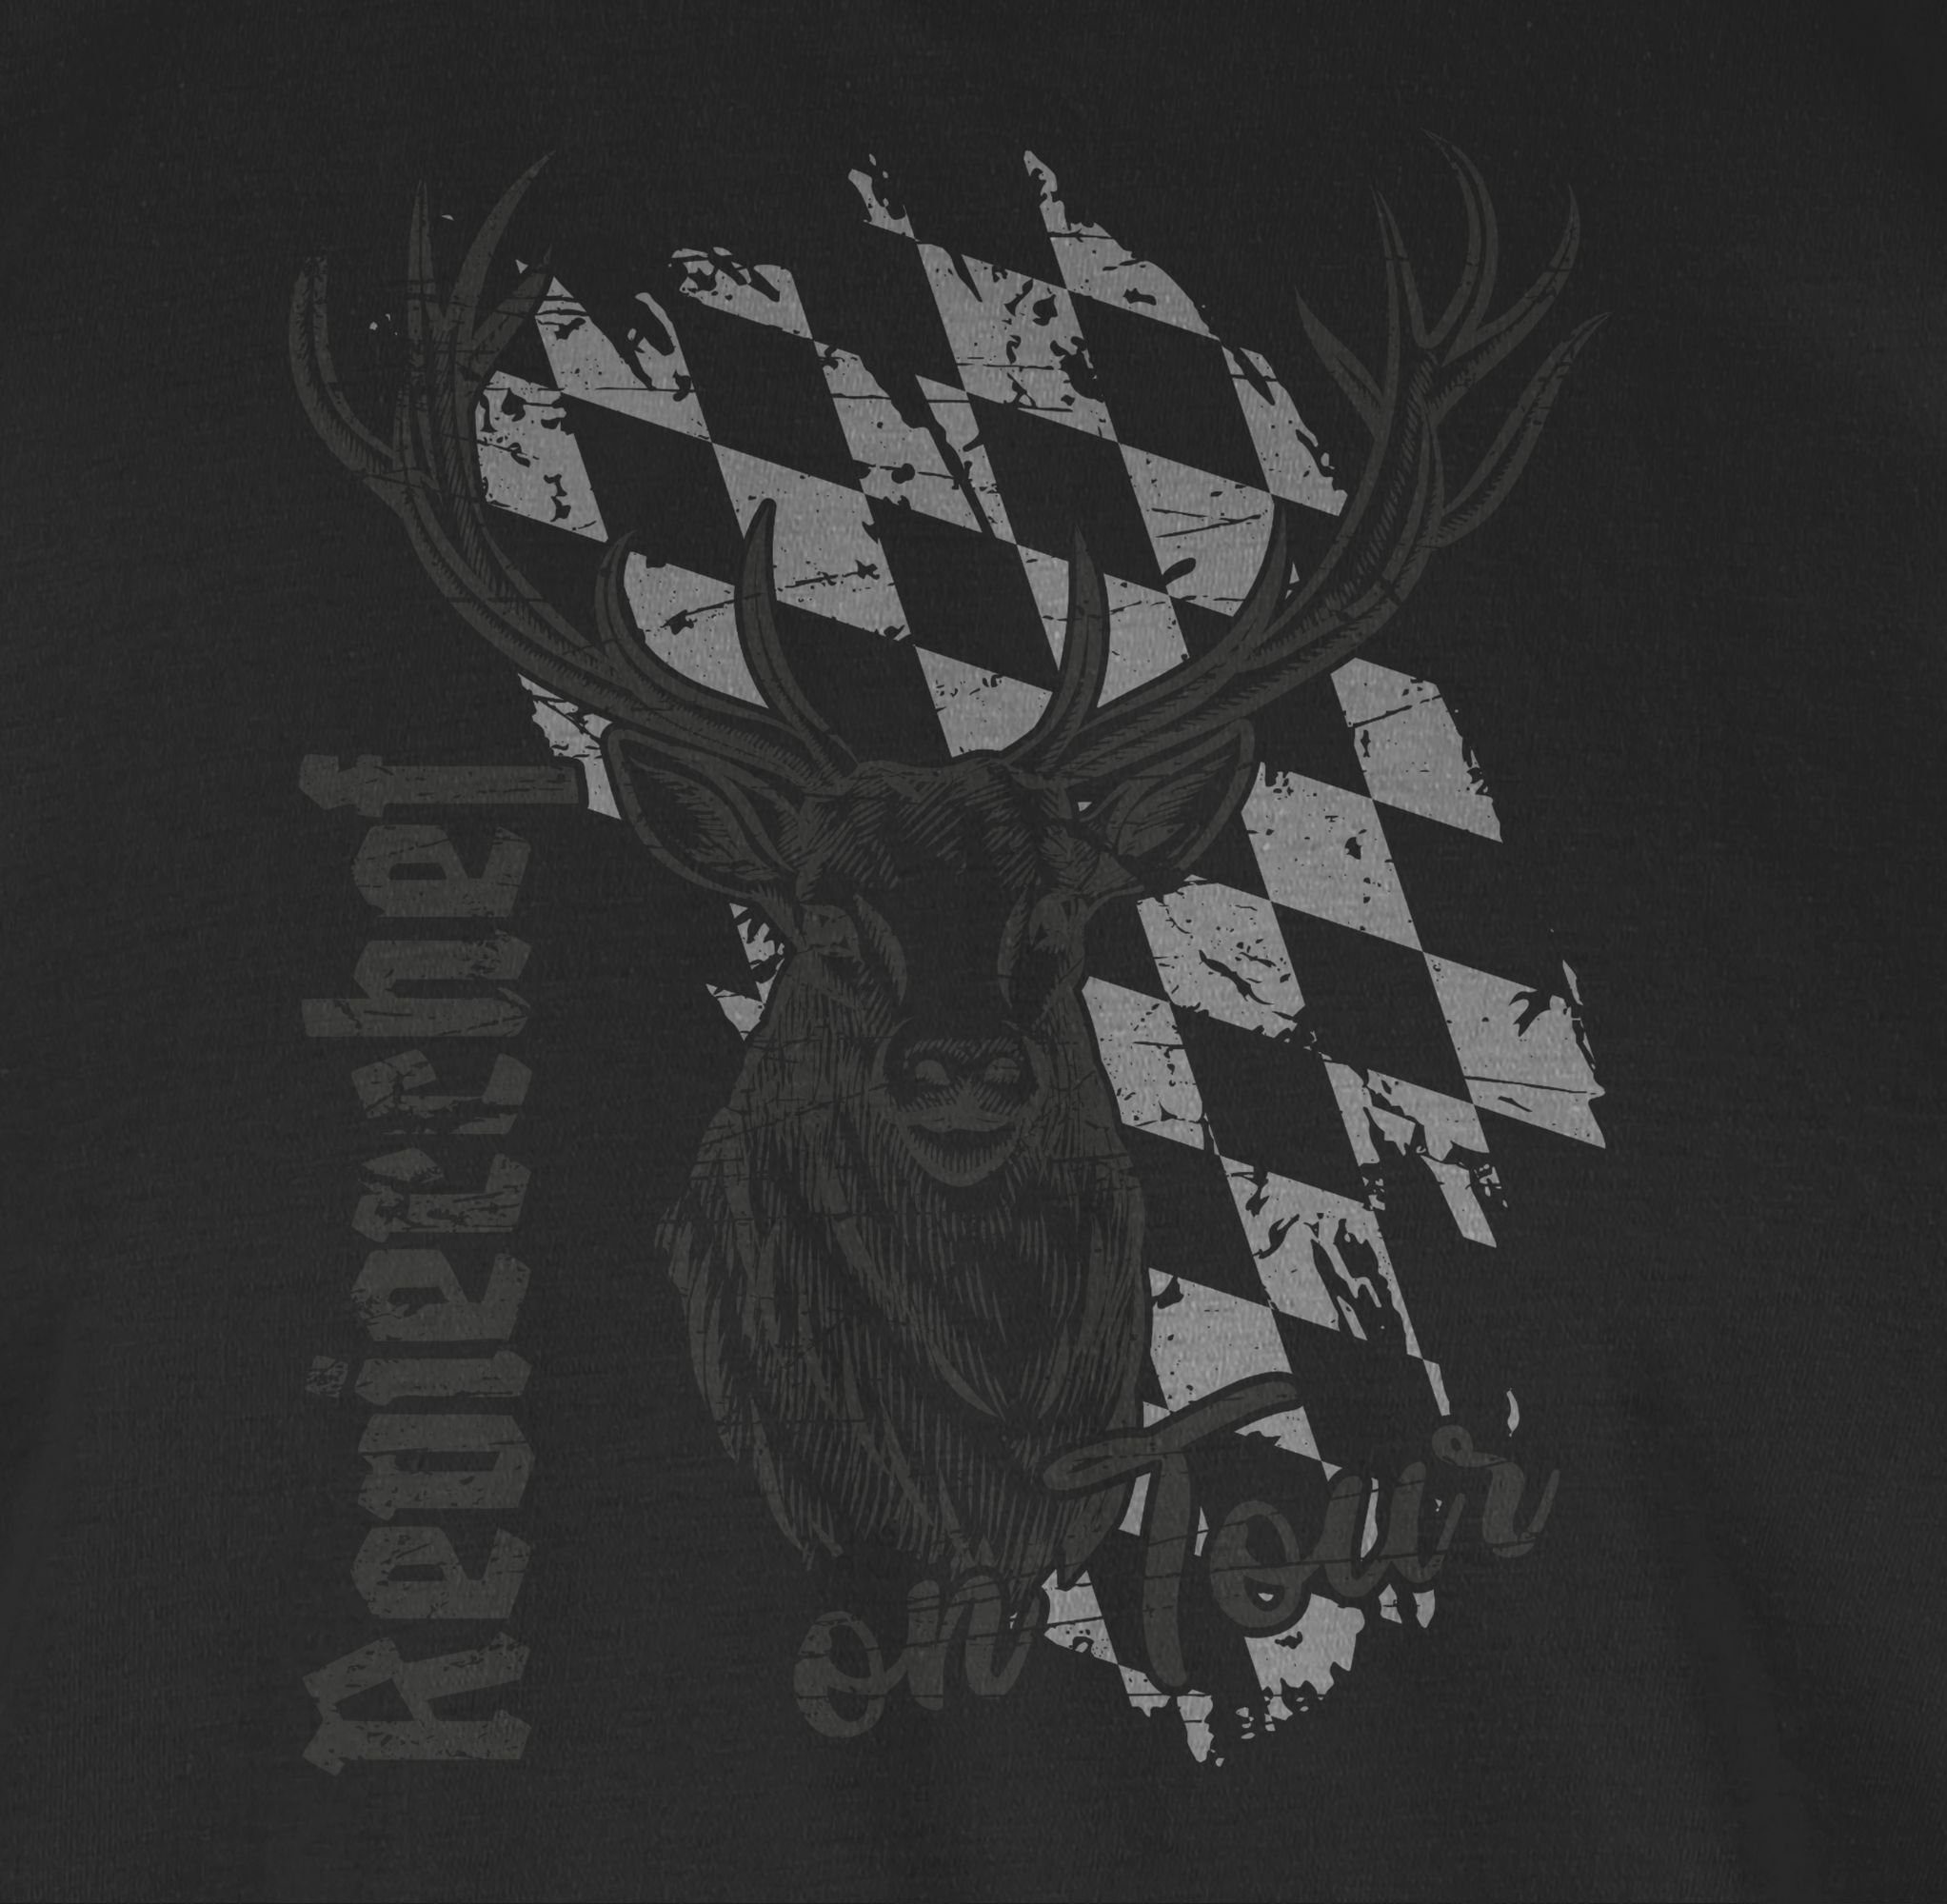 02 Shirtracer für Bayern Jagd Volksfest Hirsch T-Shirt Schwarz Oktoberfest Herren Jäger Trachten Mode Revierchef